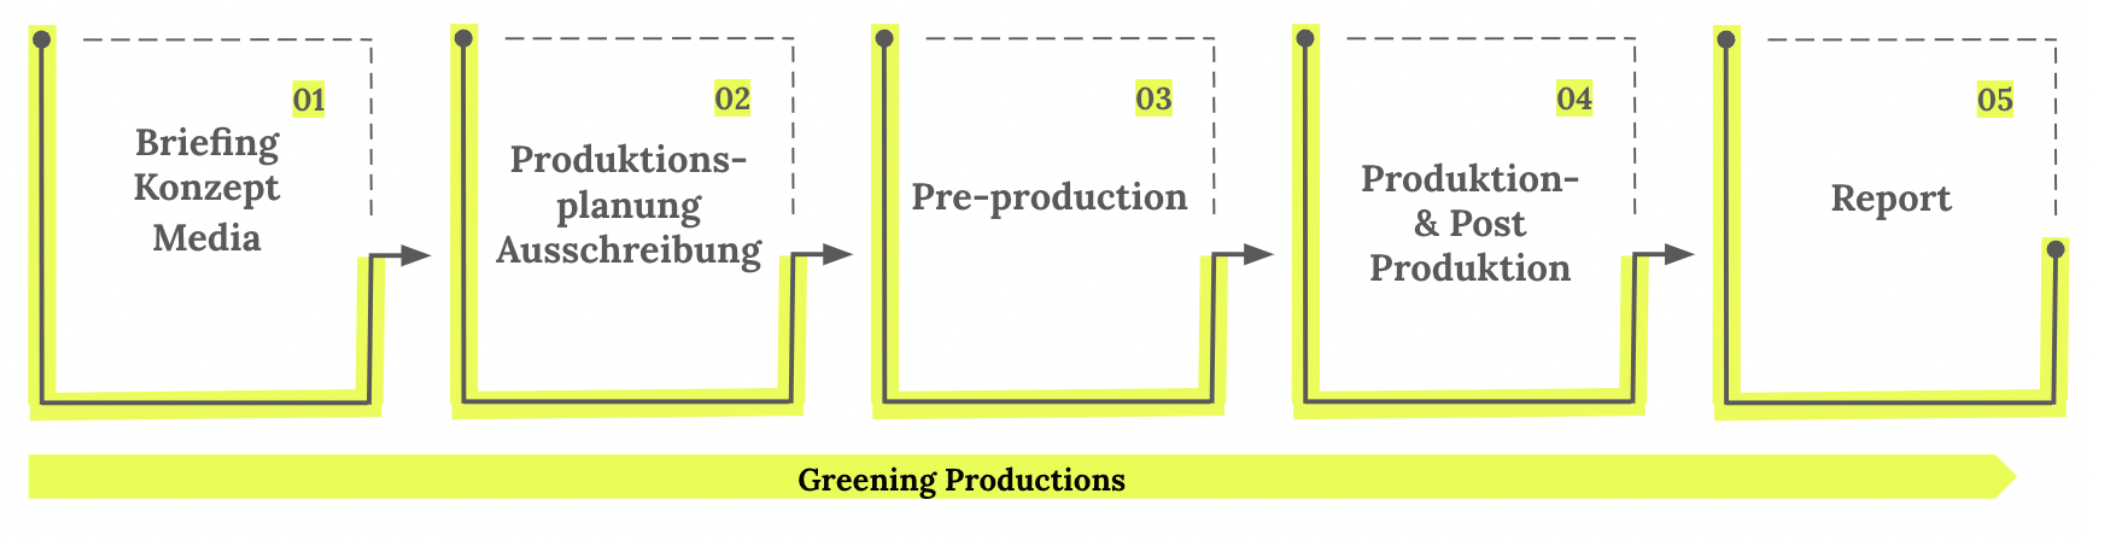 greenproductions